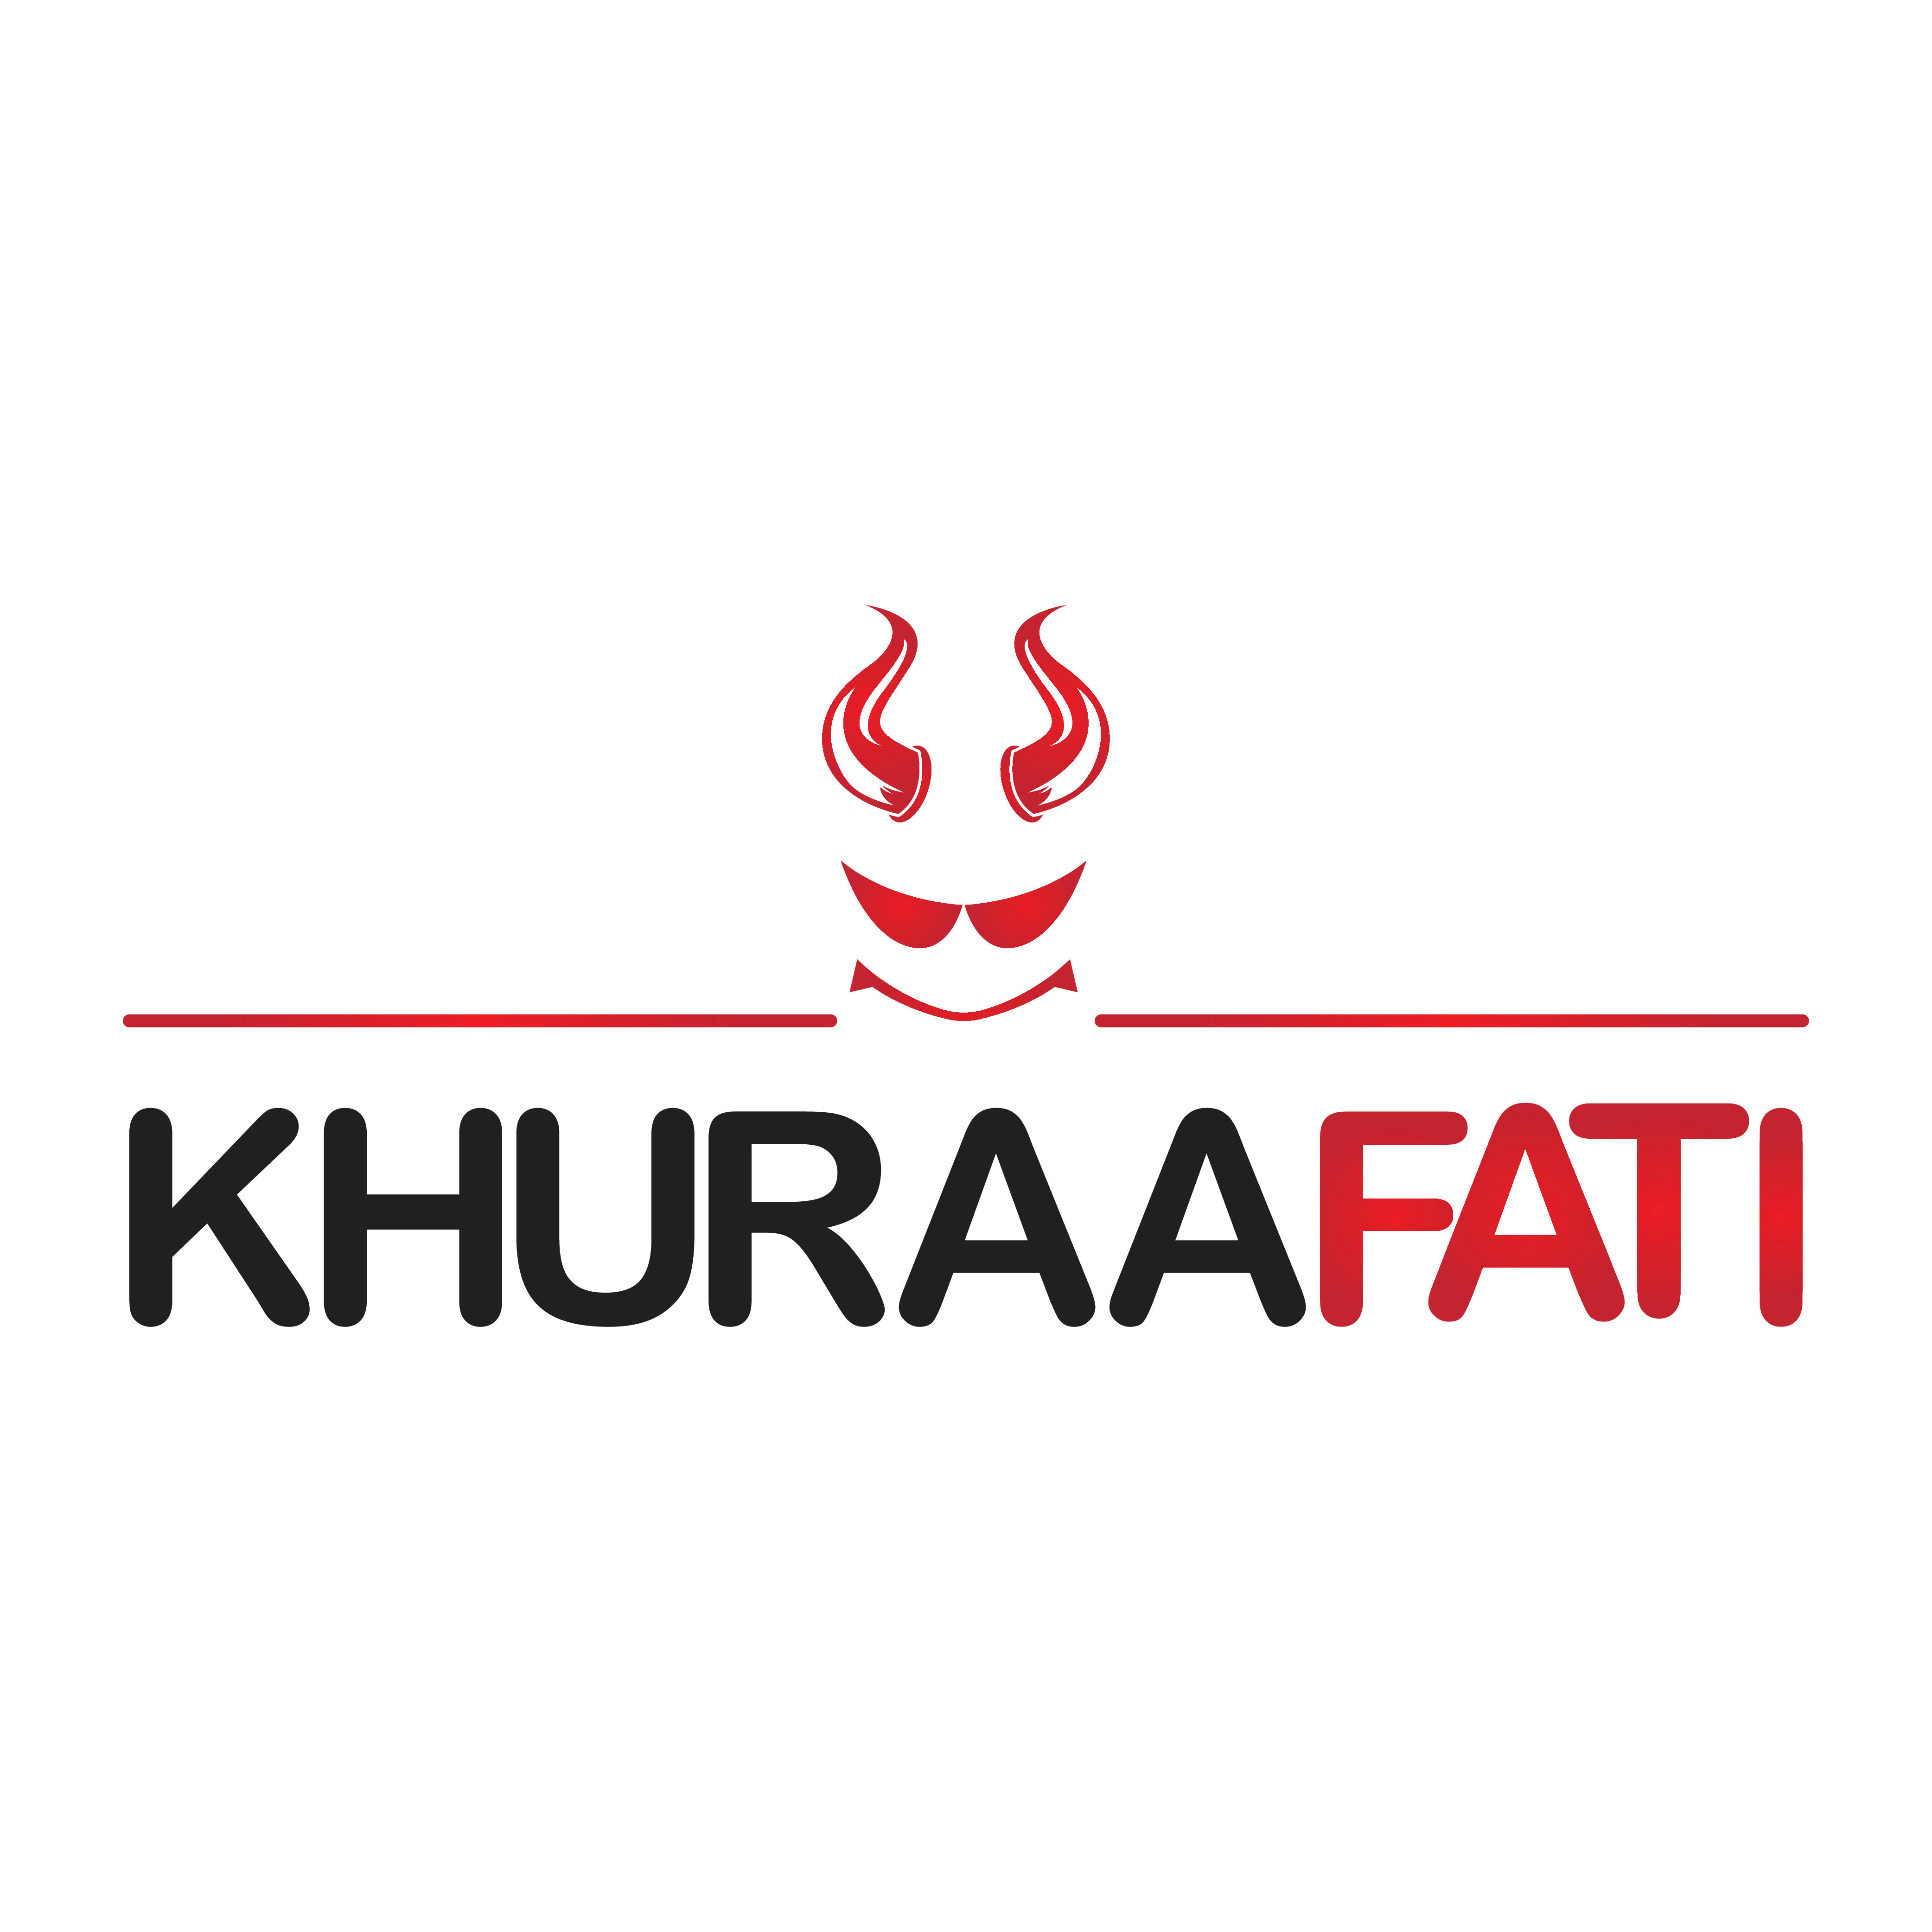 Khuraafati